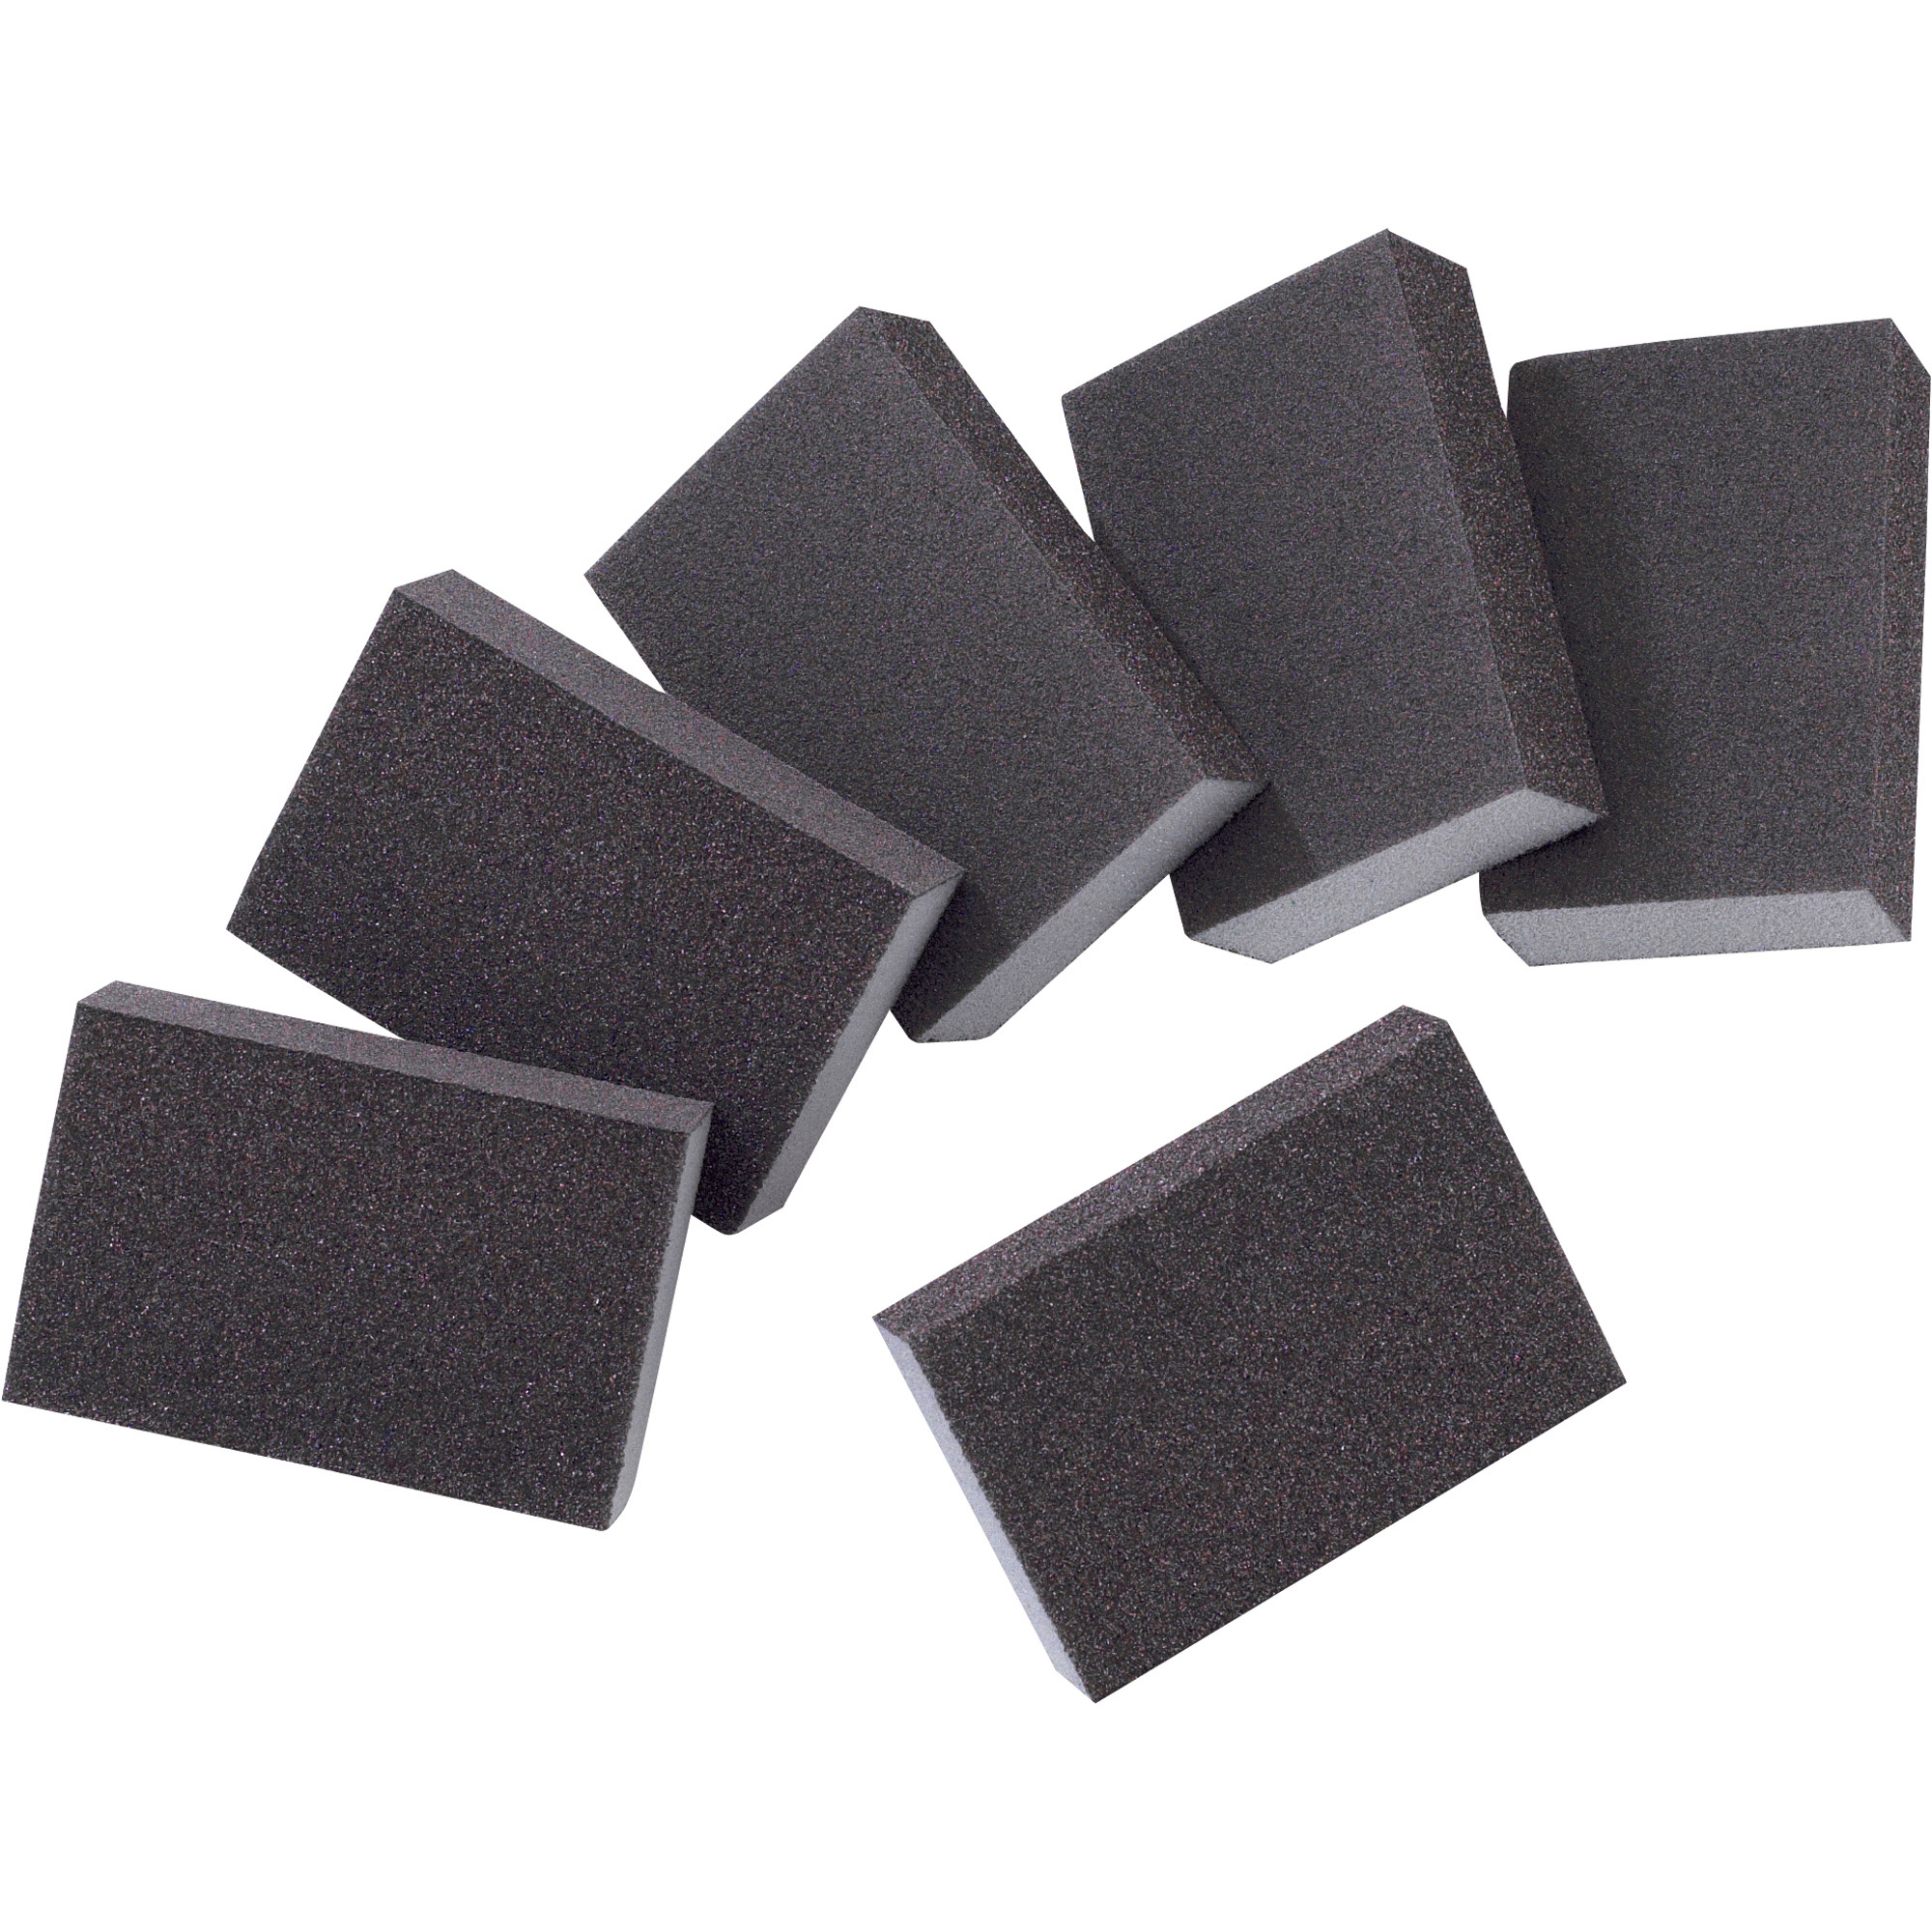 Pack of 20 3M ULTRA FINE GRIT #800-1000 Sanding Soft Sponge Hand Abrasive Sheet 